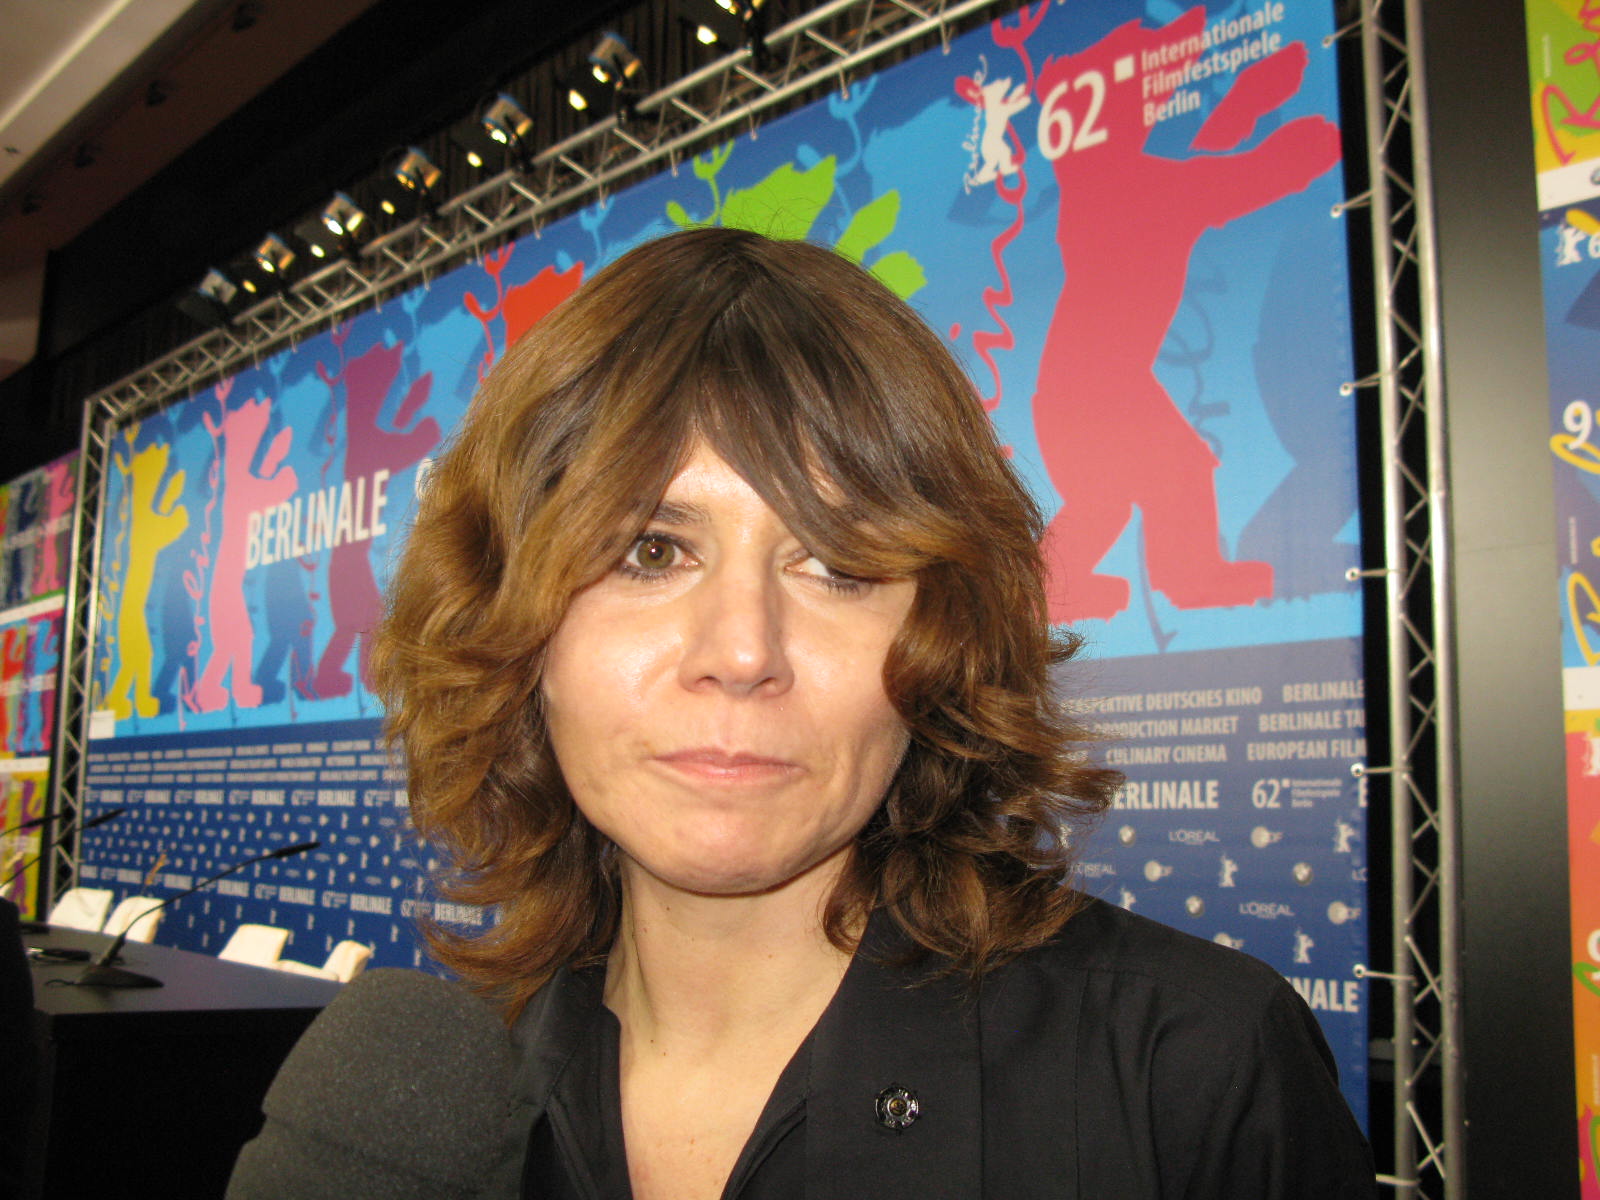 Małgośka Szumowska, Konferencja prasowa Berlinale, fot. Alexandra Hołownia